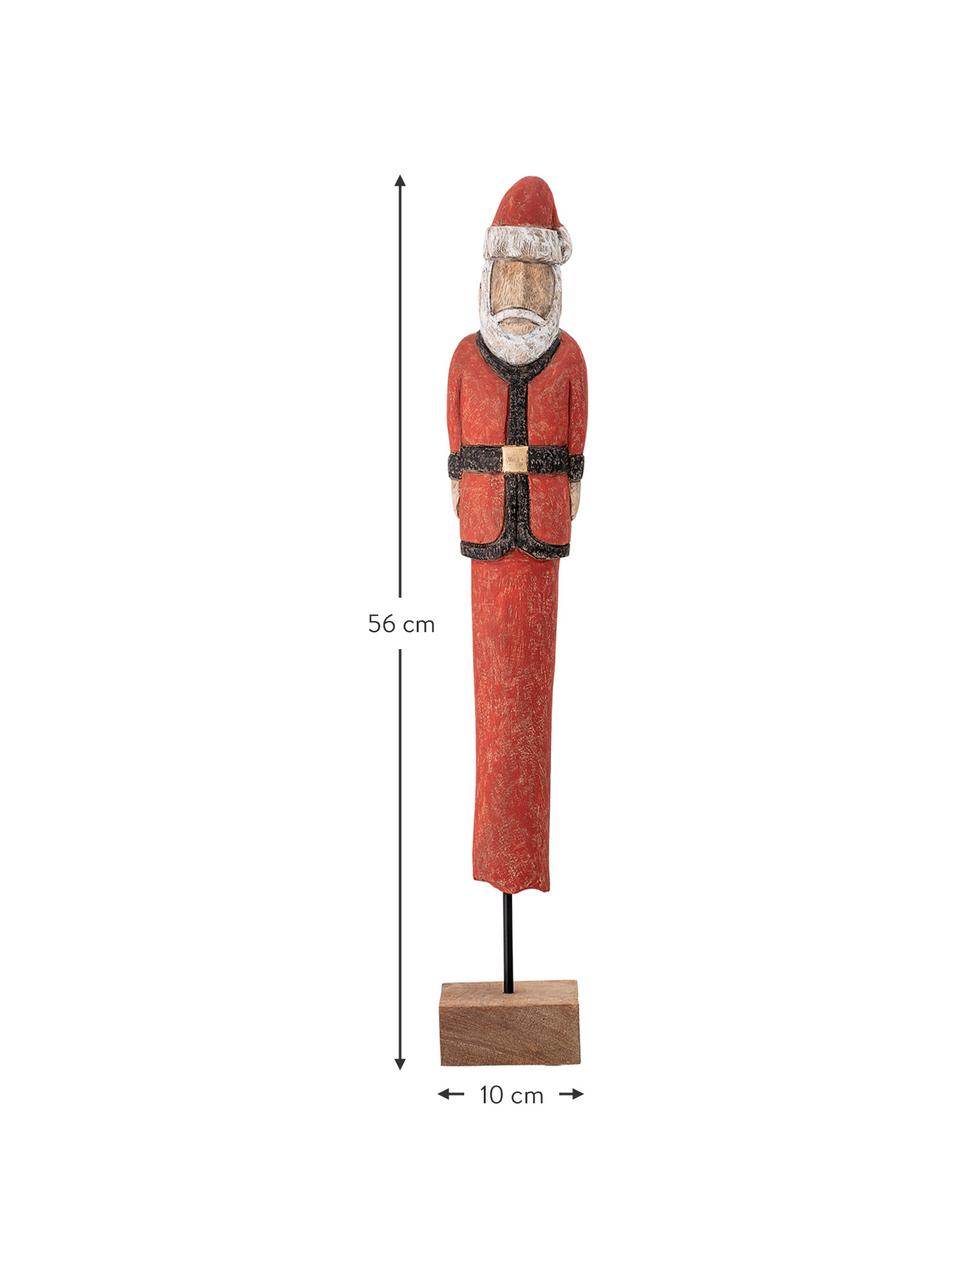 Dekorácia Santa, V 56 cm, Mangové drevo, lakované, kov, červená, biela, čierna, svetlé drevo, Š 10 x V 56 cm